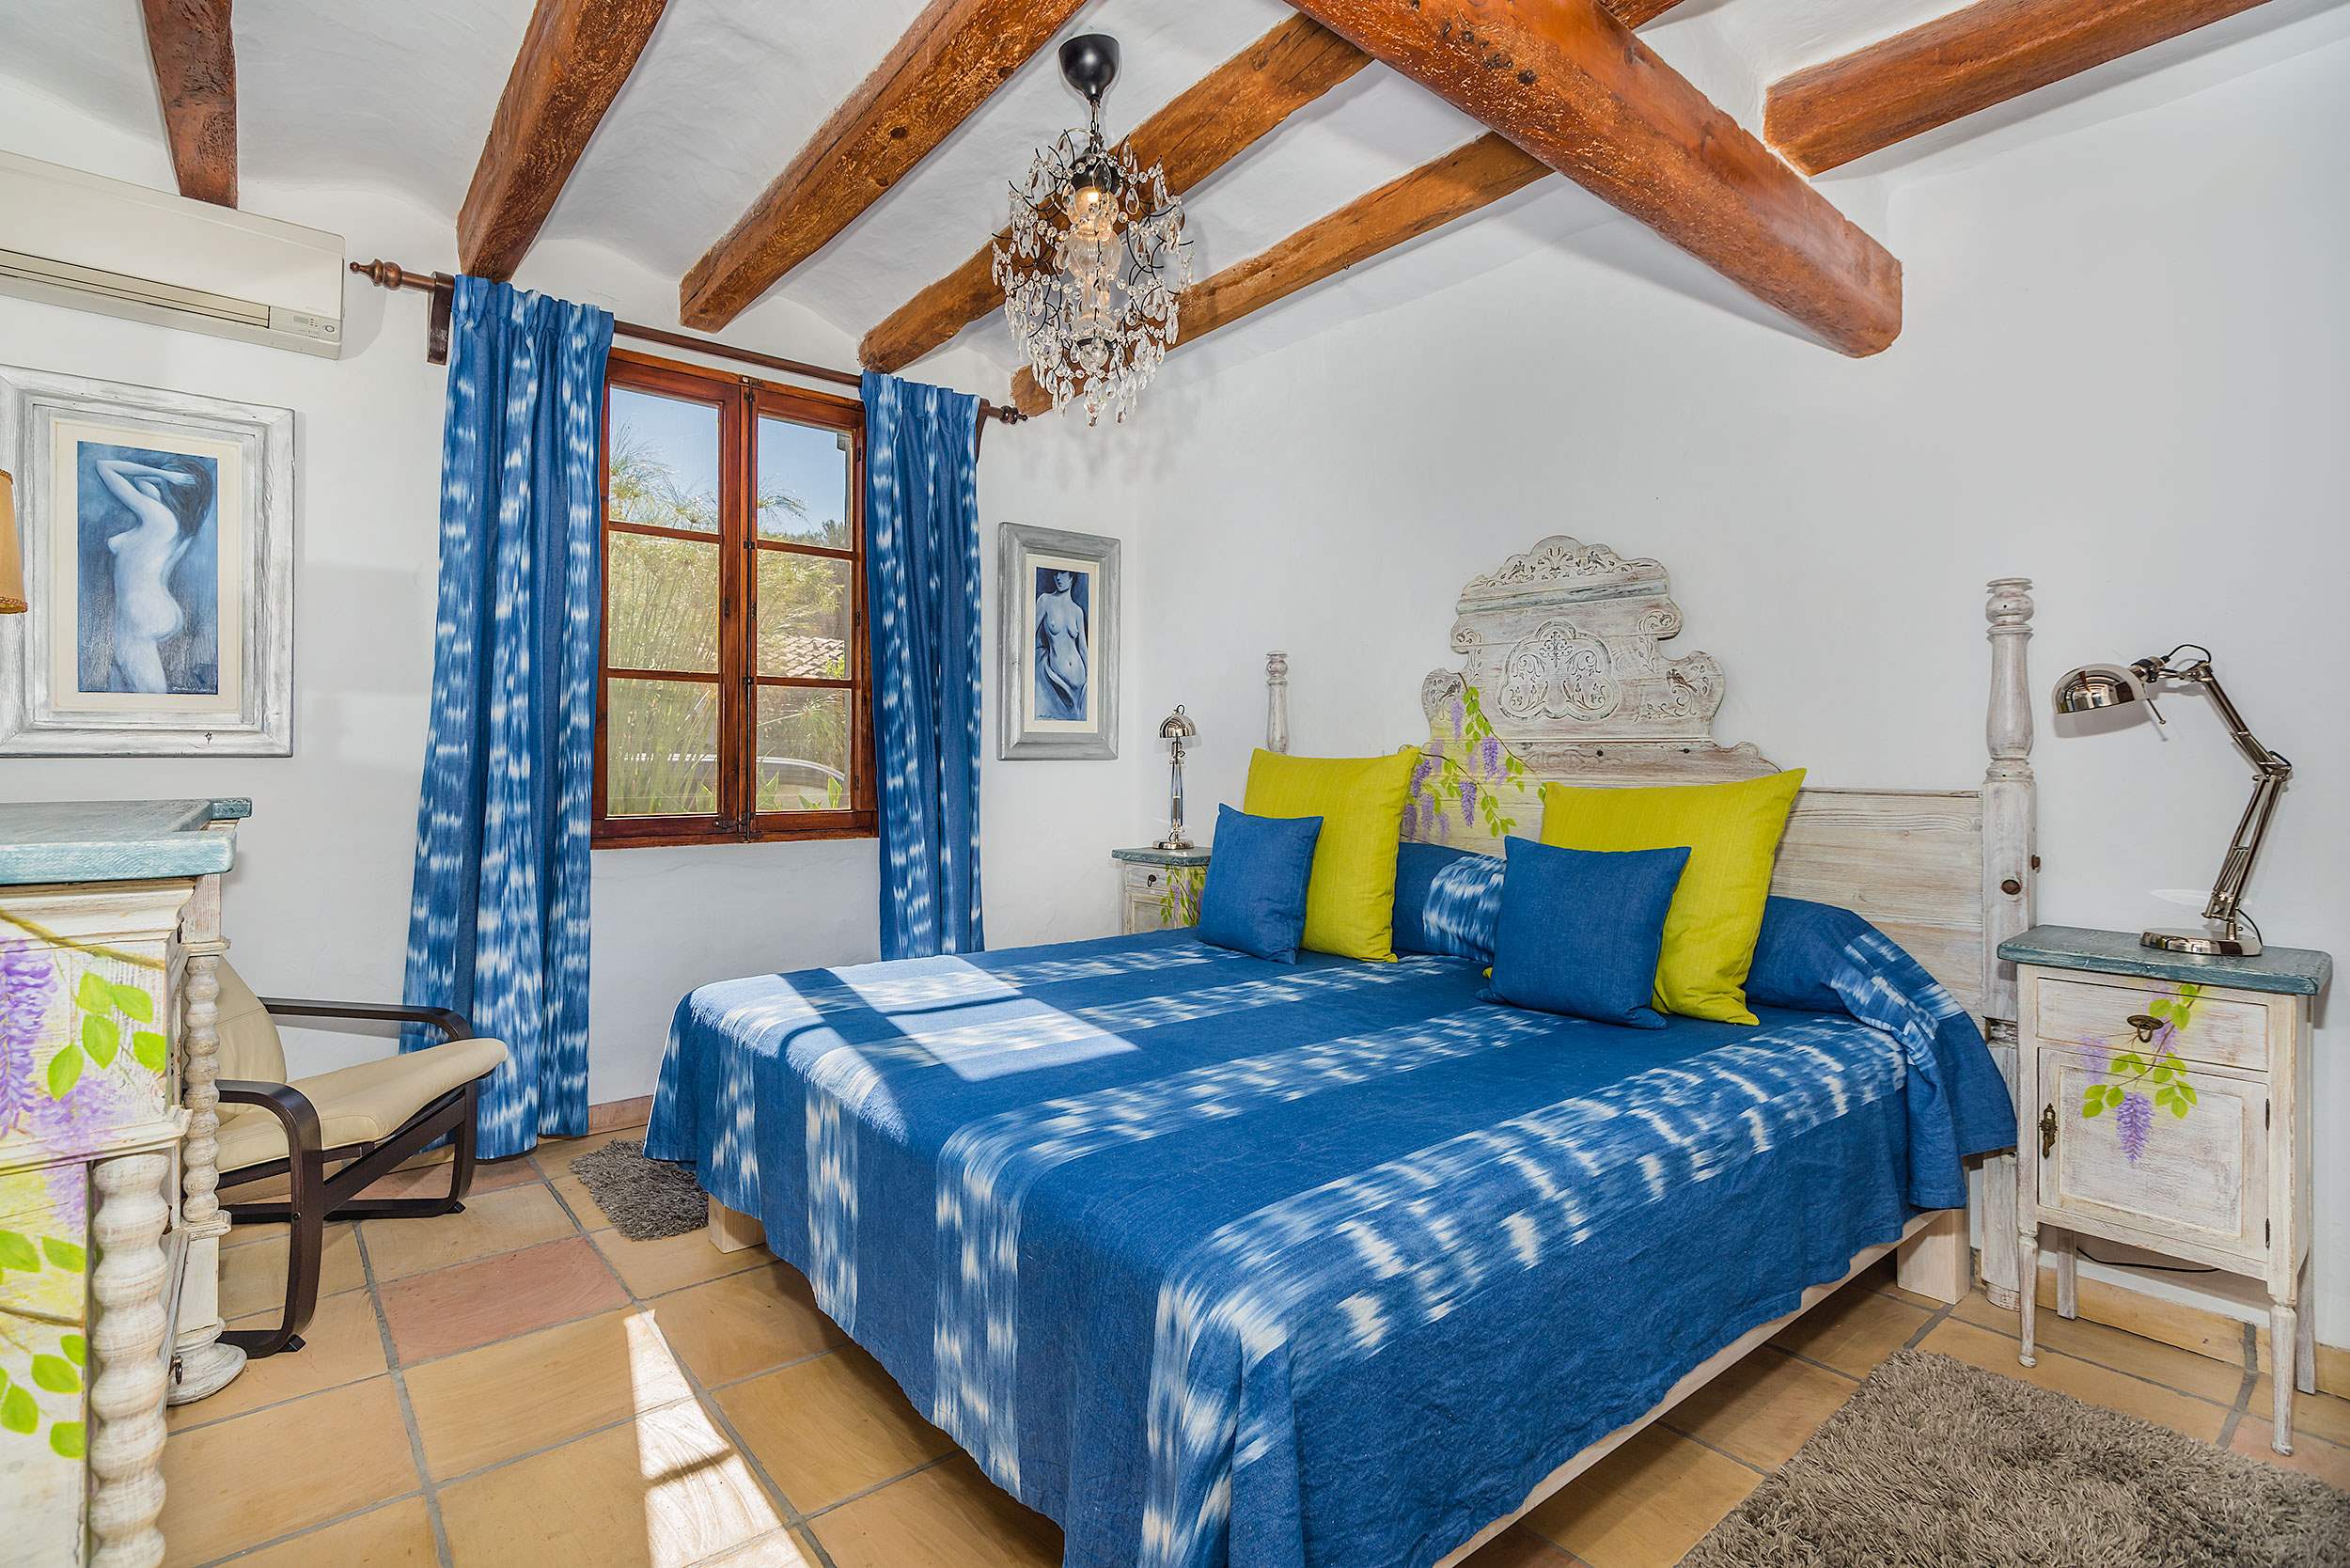 La Rota, 9 - 12 persons, 6 bedroom villa in Pollensa & Puerto Pollensa, Majorca Photo #21